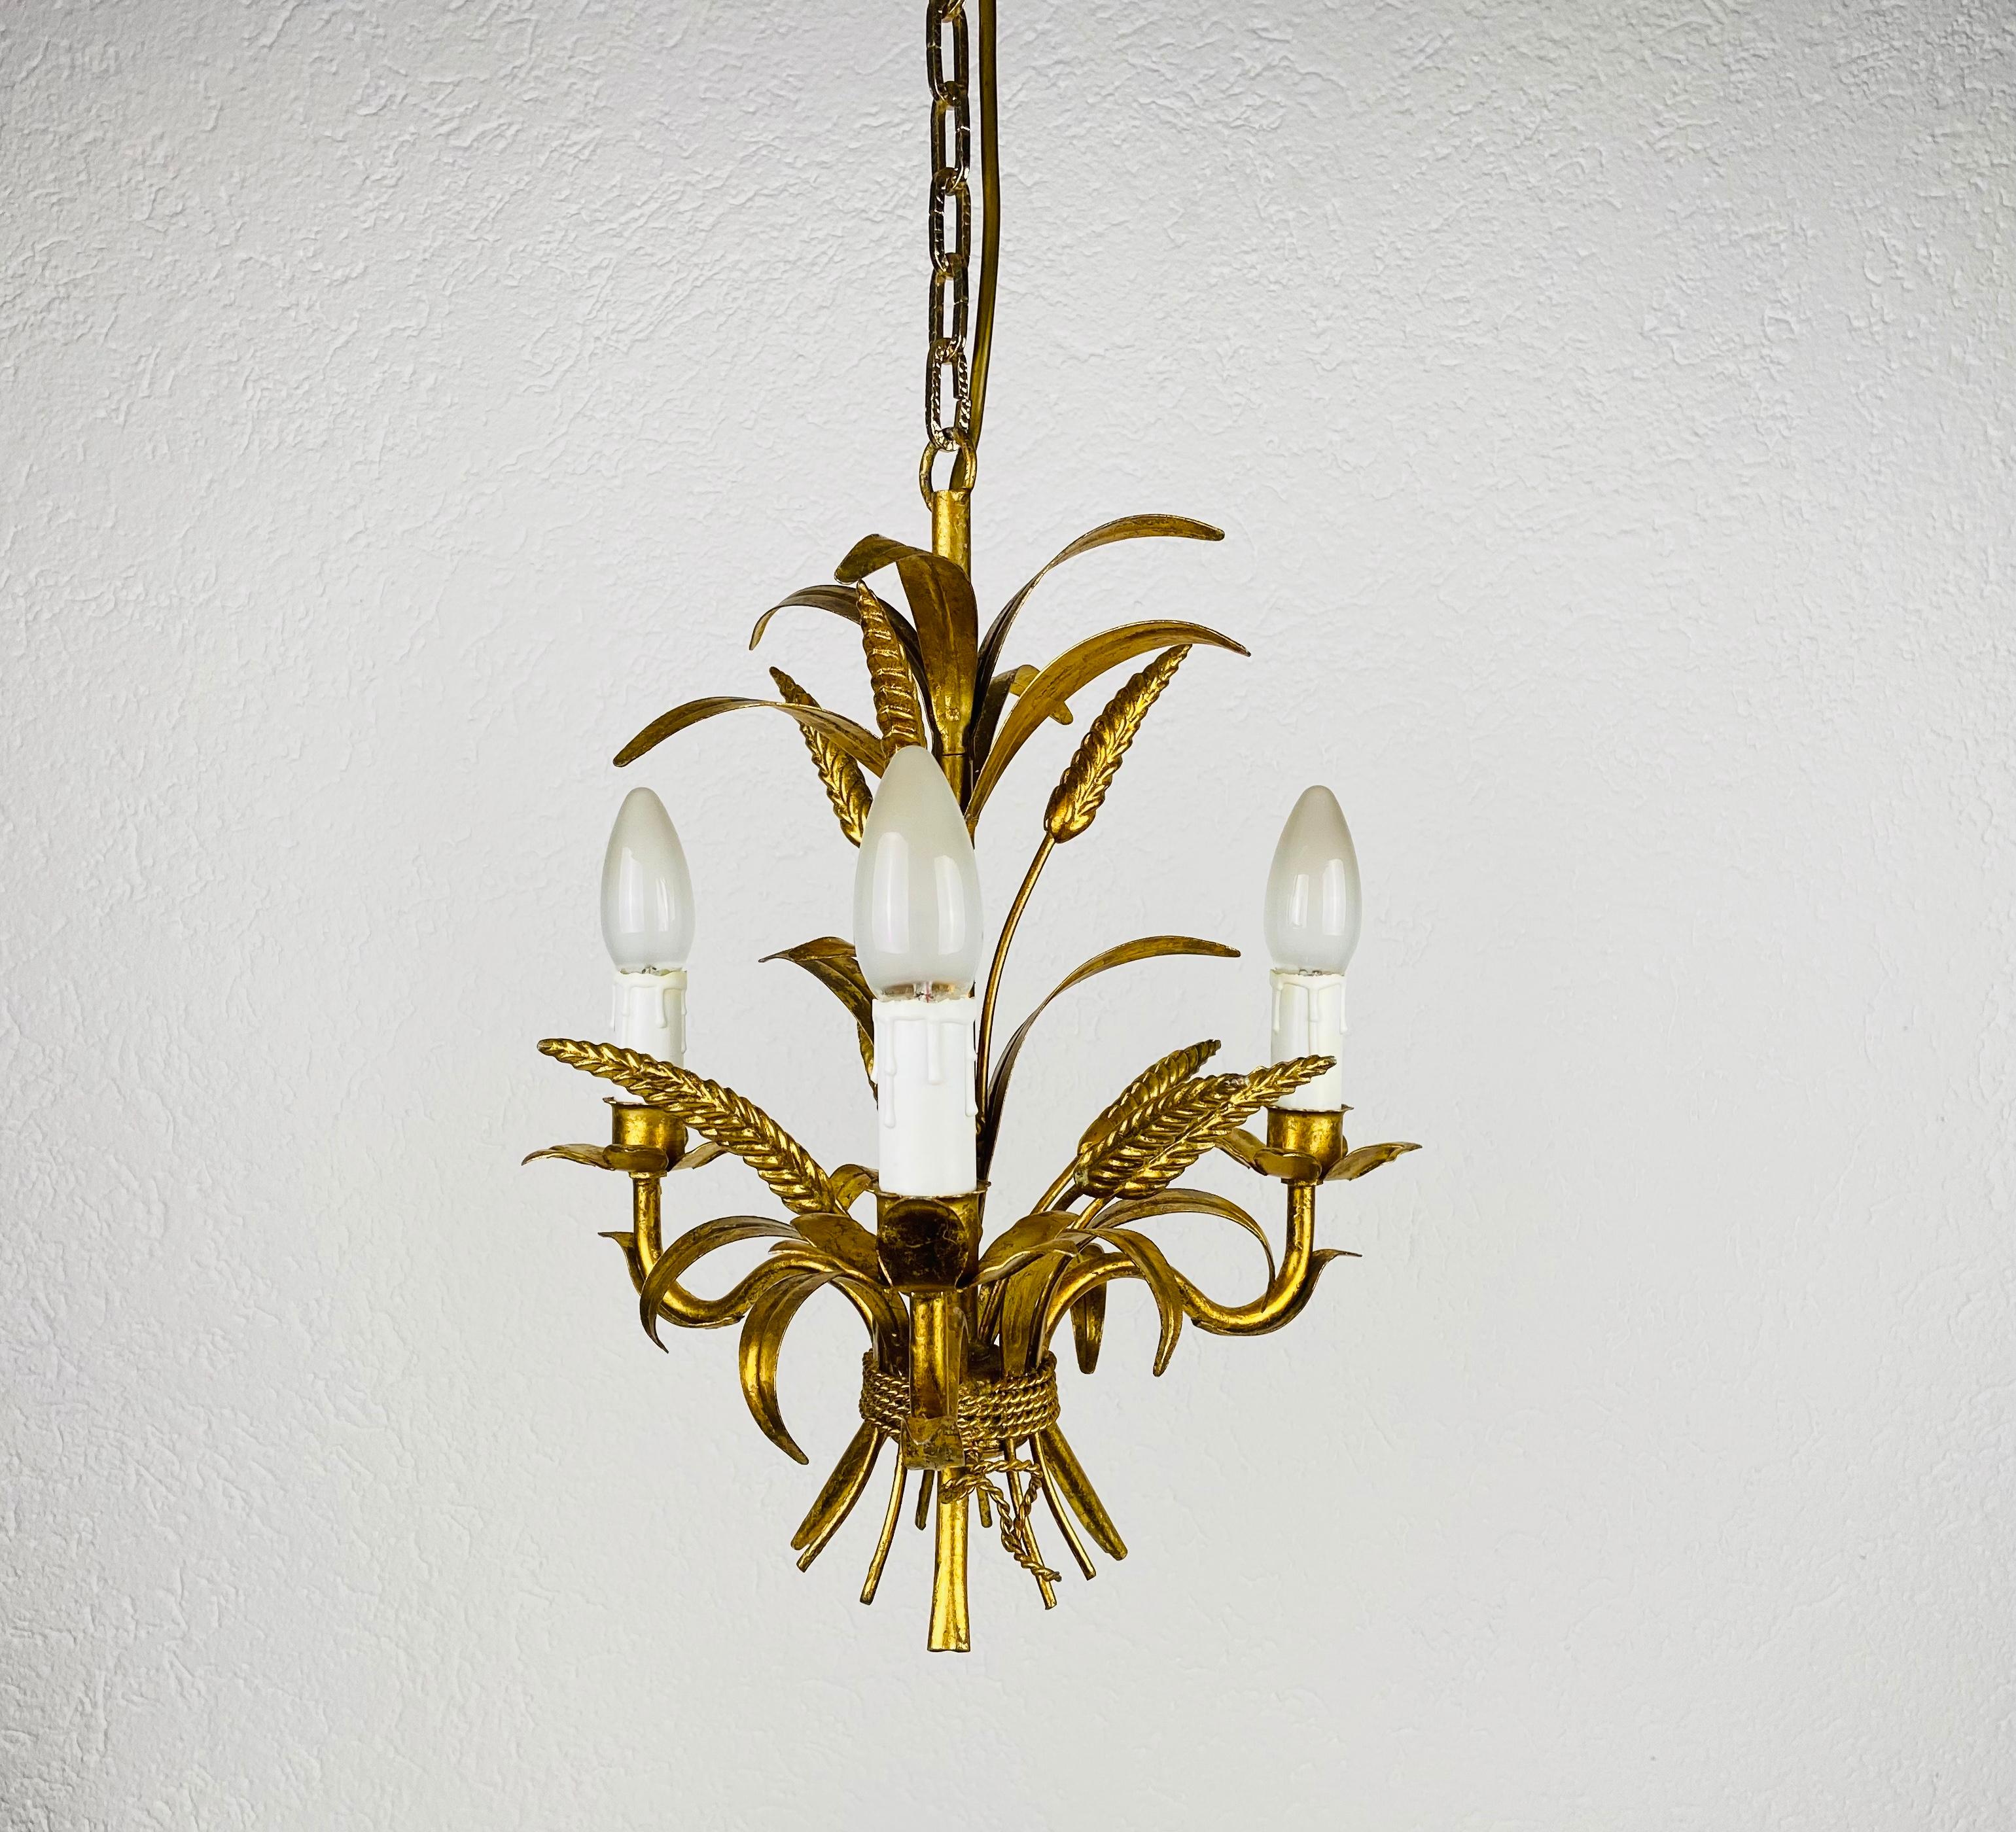 Une extraordinaire lampe suspendue du designer allemand Hans Kögl, fabriquée en Allemagne dans les années 1970. La lampe présente un magnifique motif de gerbe de blé. Il est réalisé dans la période de Hollywood Regency.

Le luminaire nécessite